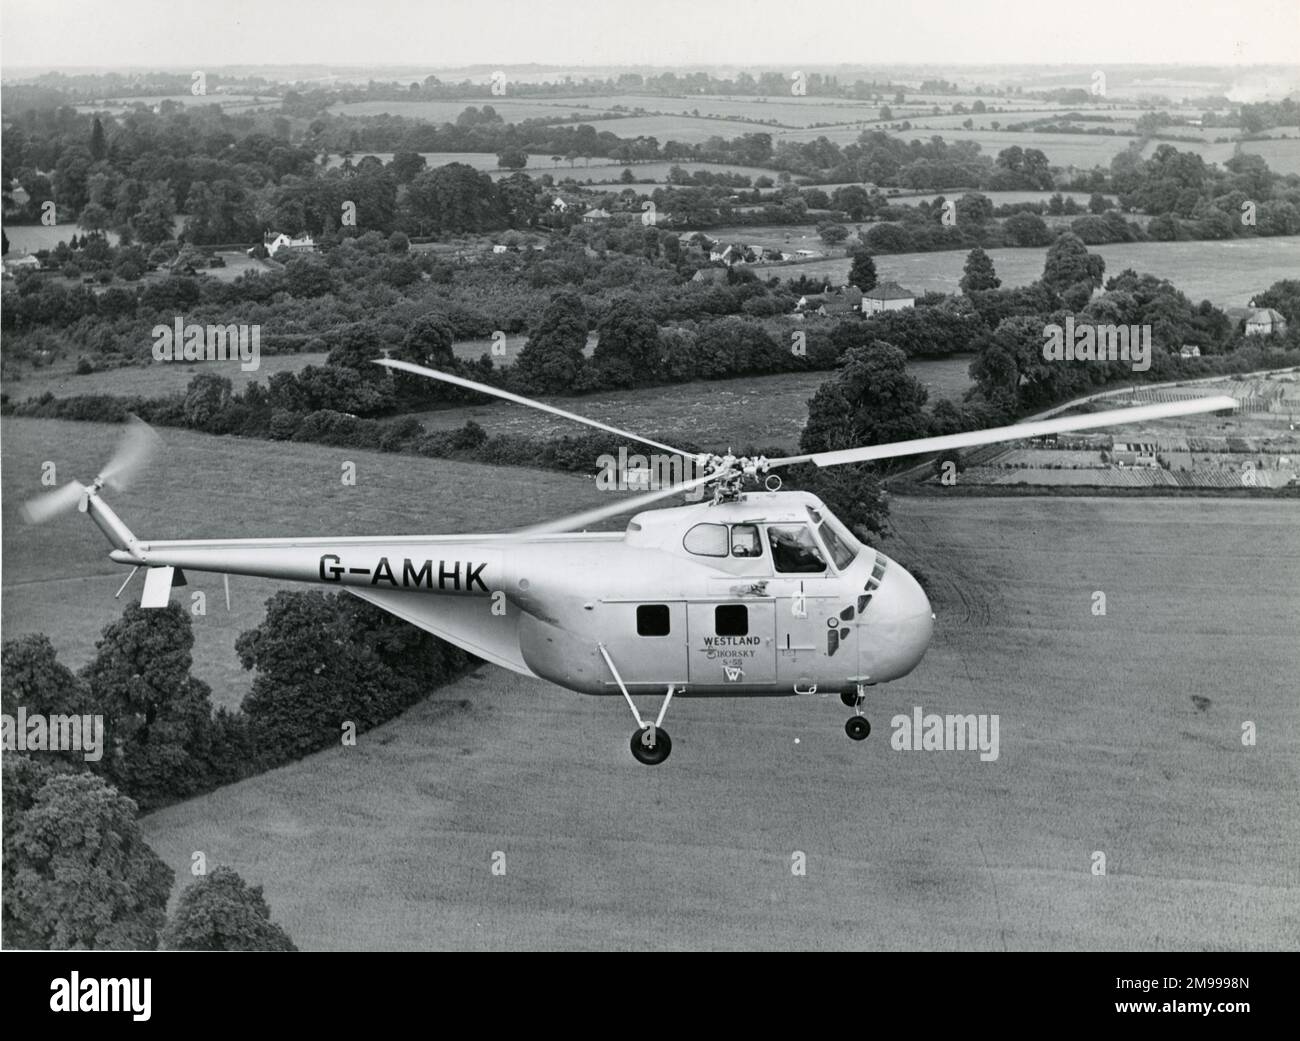 Sikorsky S-55, G-AMHK, wurde im Januar 1951 zur Verwendung als Demonstrationsmittel in Westland registriert. Stockfoto